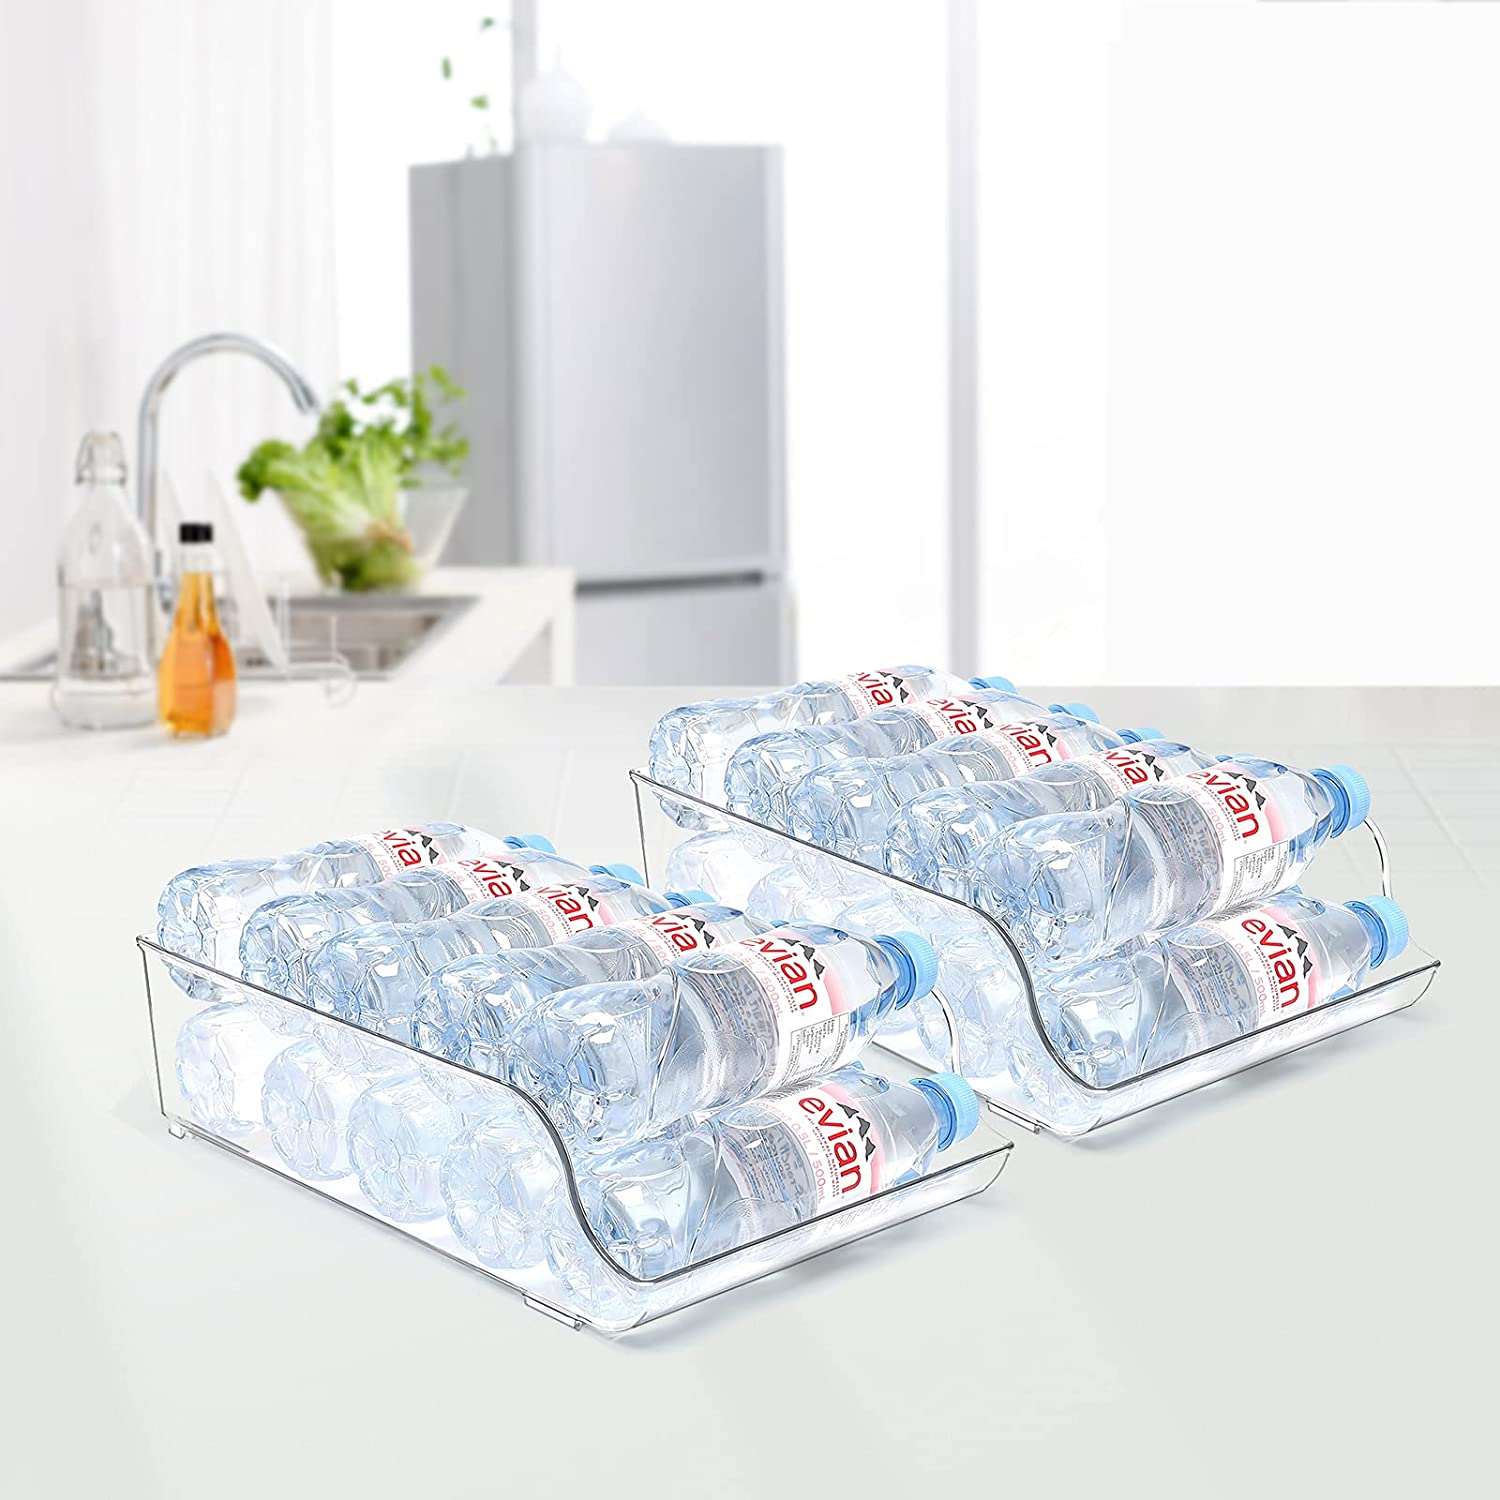 2-Pack Water Bottle Organizer Bins & Clear Storage for Refrigerator